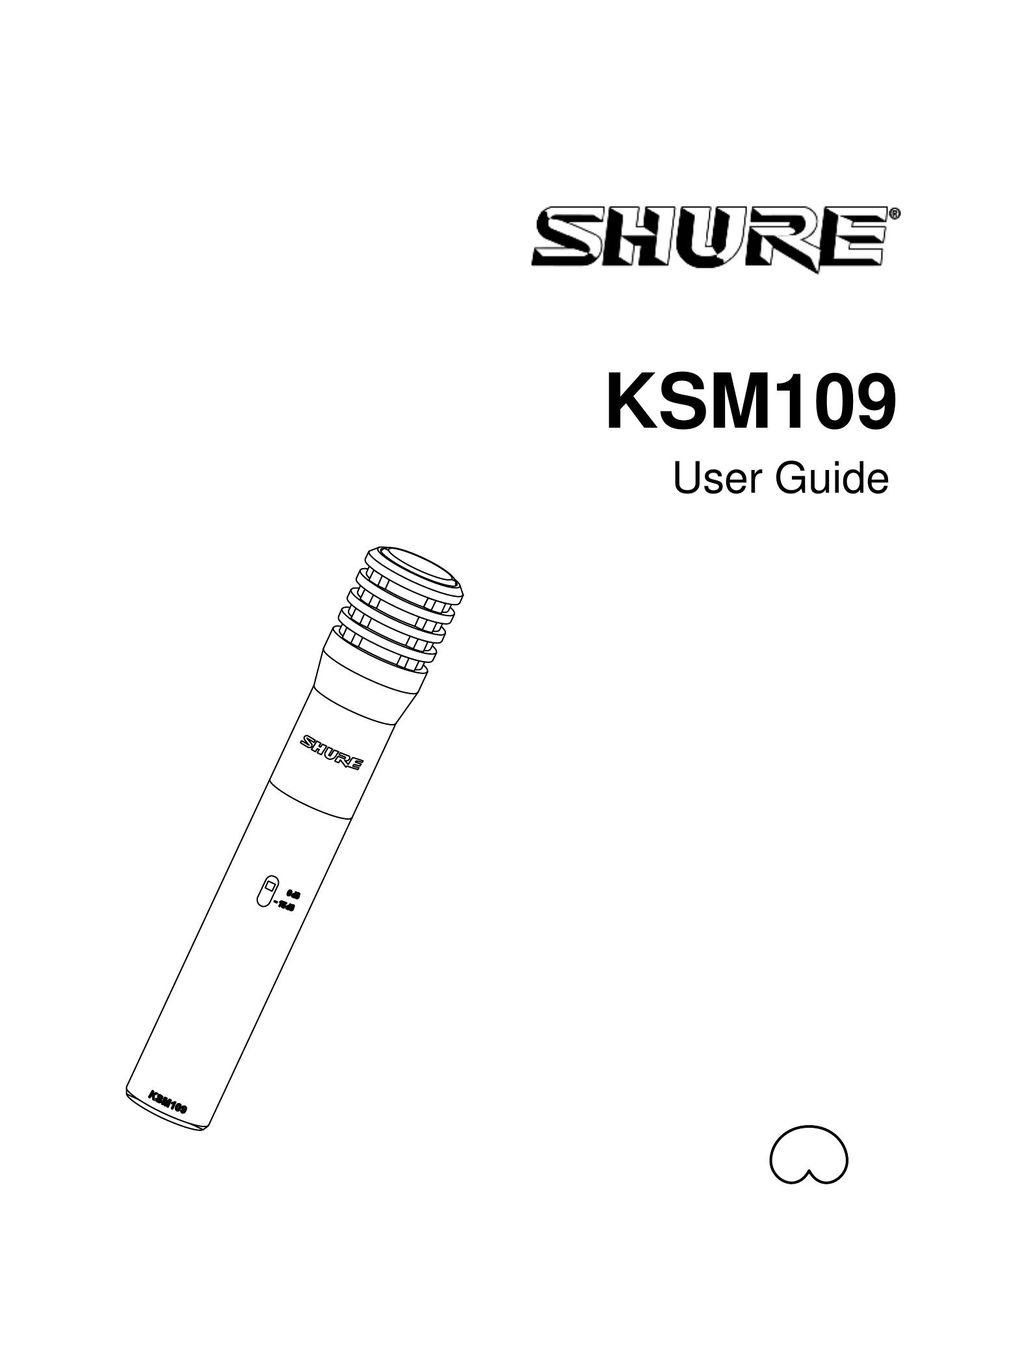 Shure KSM109 Headphones User Manual